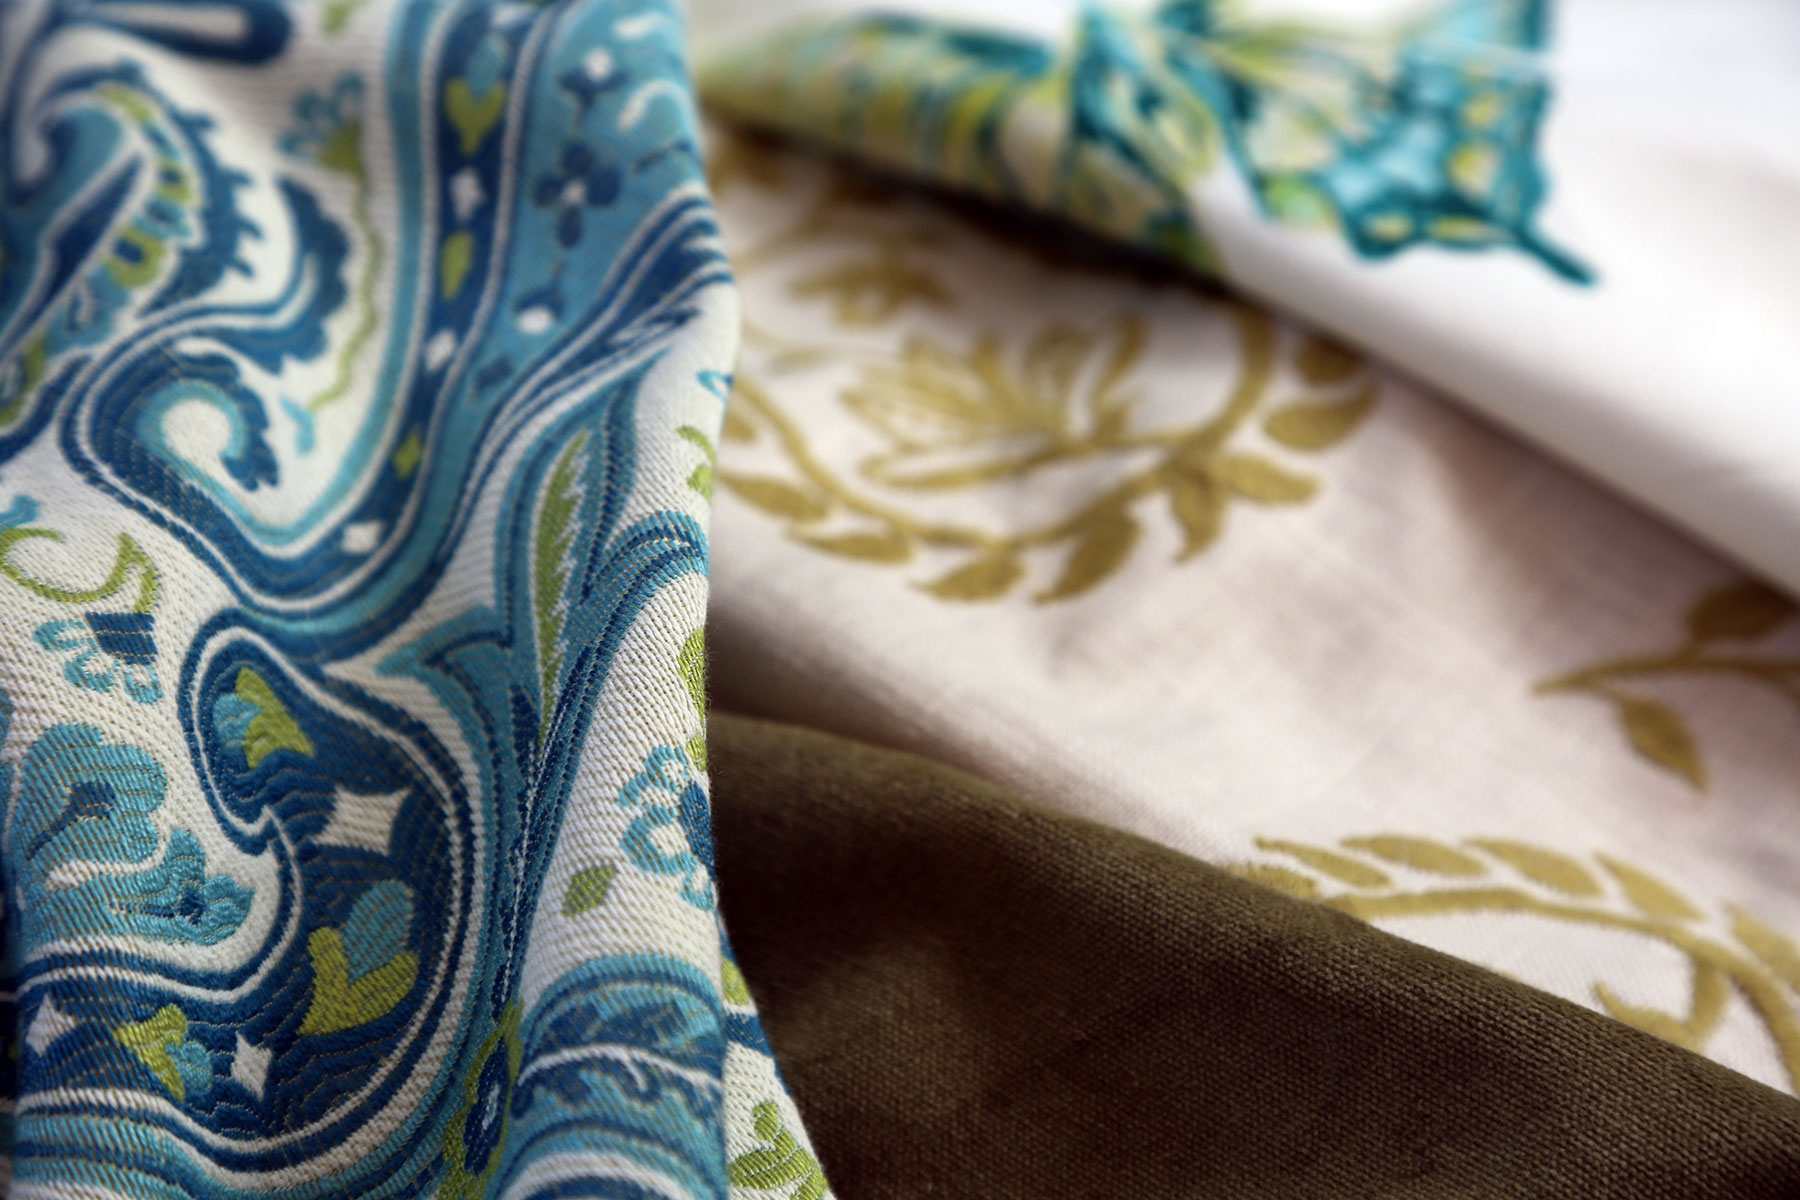 Charlotte Moss Fabricut patterns on fabrics